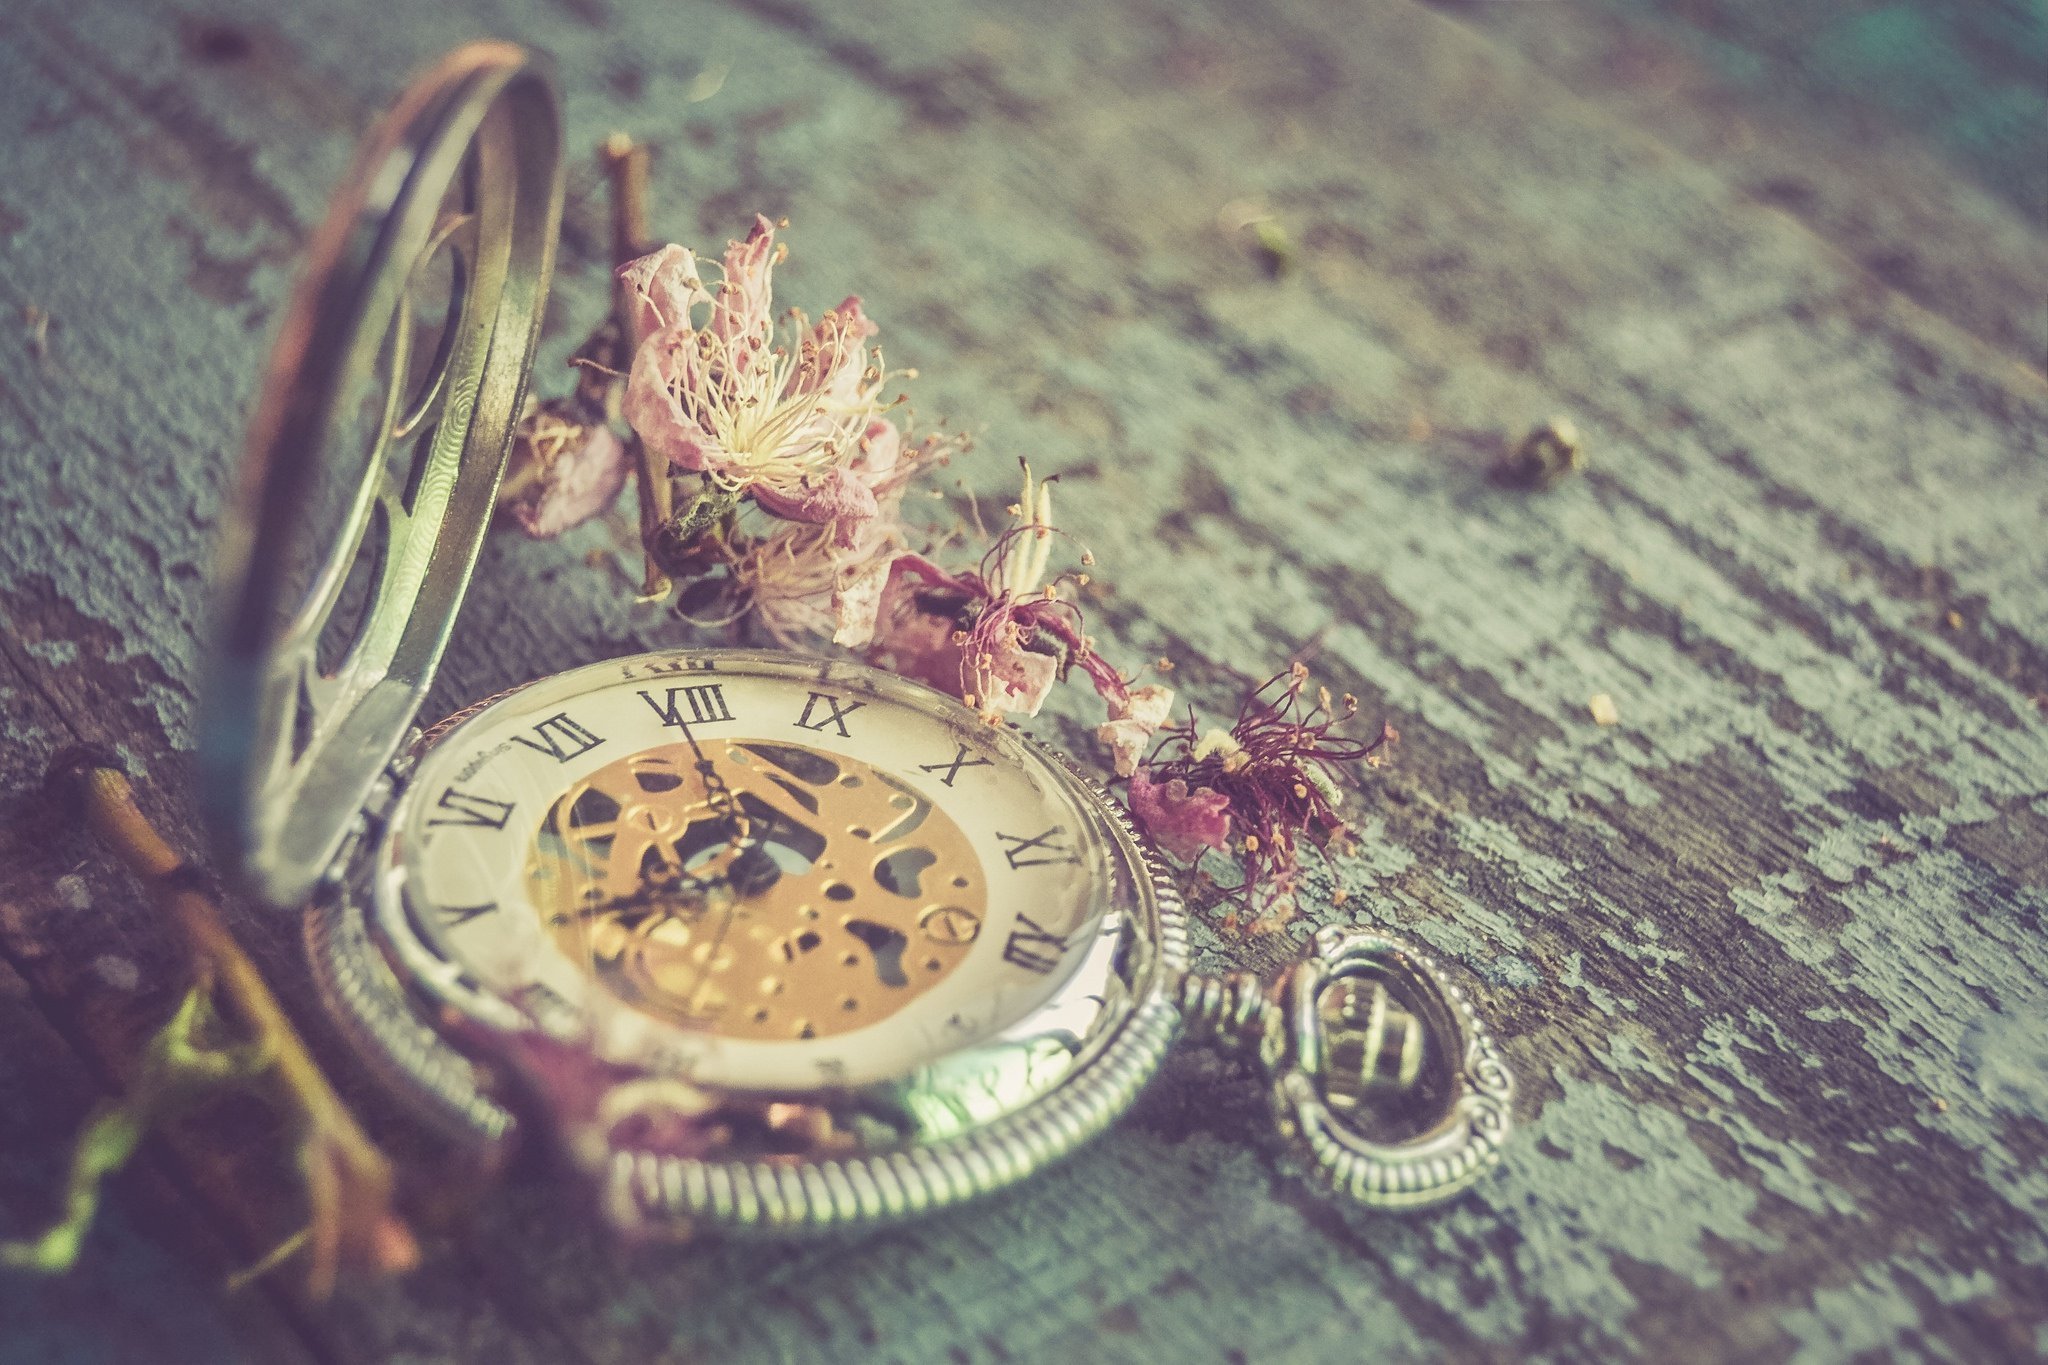 Фото обоев на часы. Красивые часы. Старинные часы. Красивые старинные часы. Картинки с часами красивые.